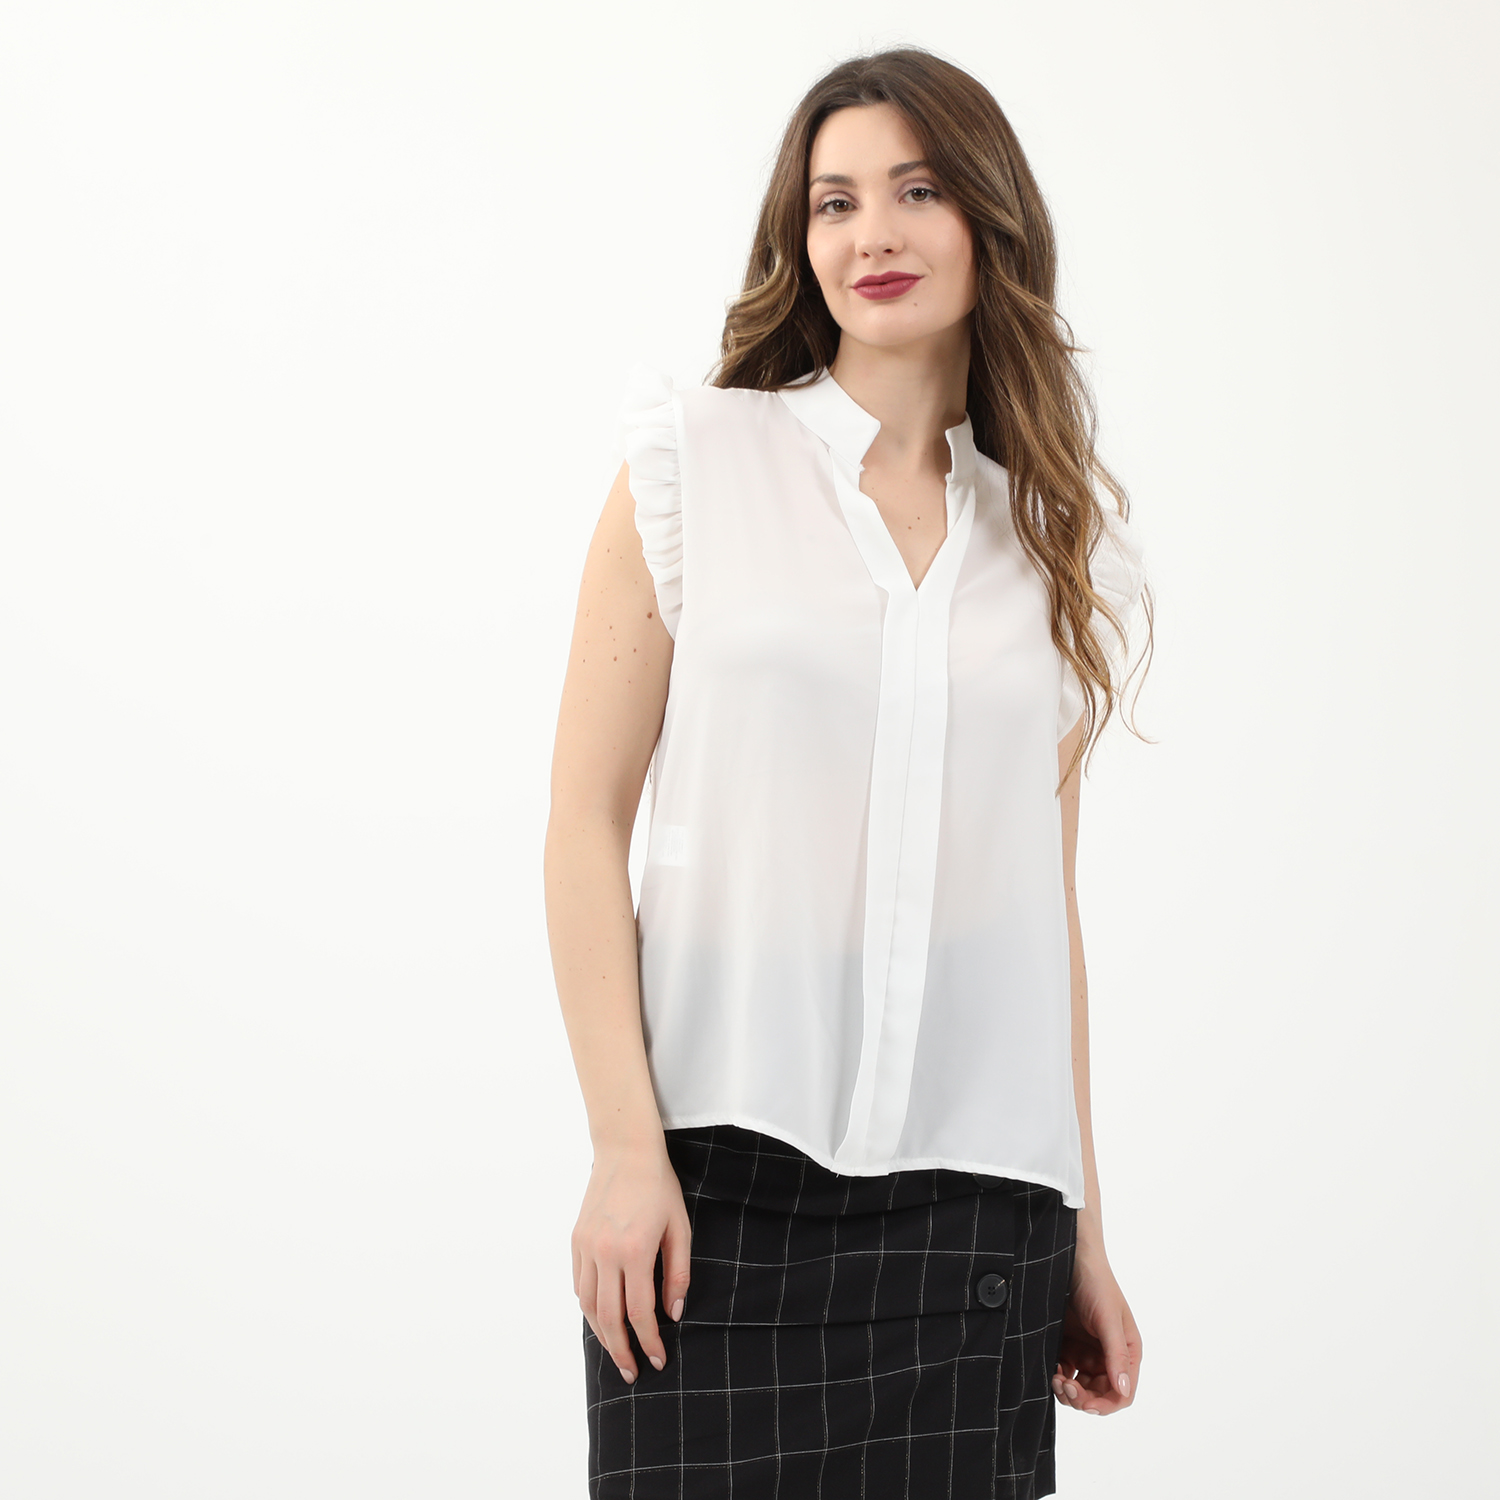 Γυναικεία/Ρούχα/Μπλούζες/Αμάνικες ATTRATTIVO - Γυναικείο top ATTRATTIVO λευκό